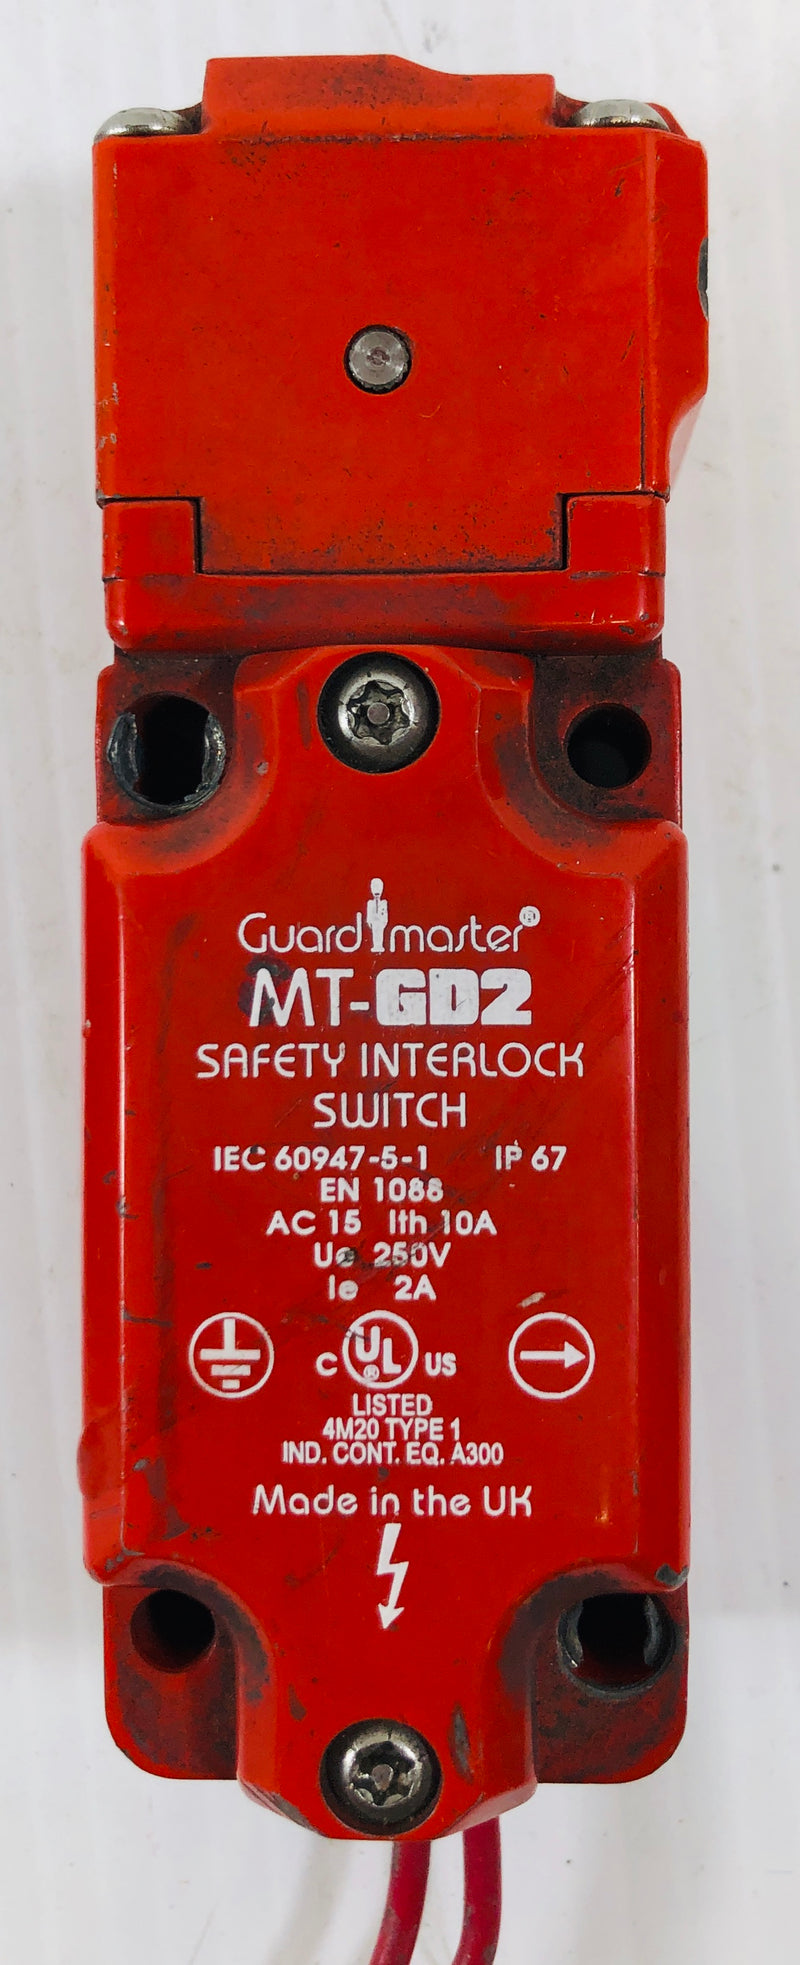 Allen-Bradley Guardmaster Safety Interlock Switch MT-GD2